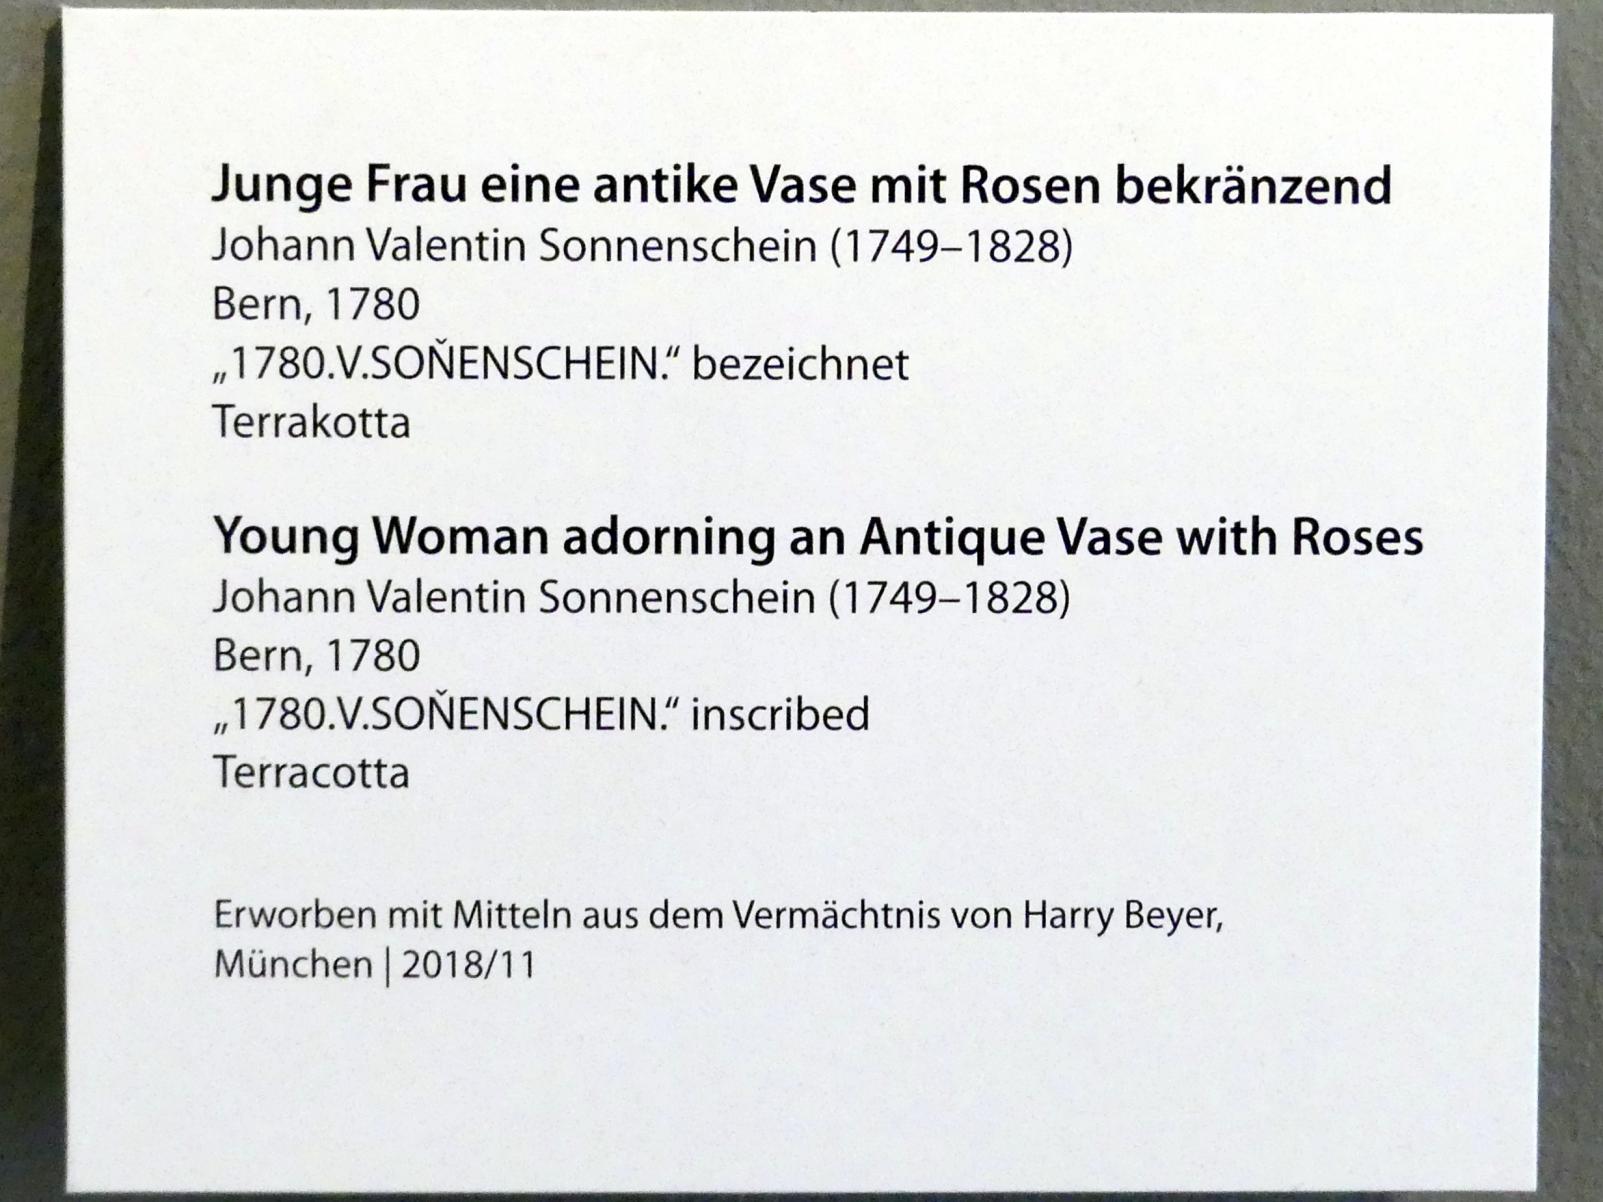 Johann Valentin Sonnenschein (1764–1800), Junge Frau eine antike Vase mit Rosen bekränzend, München, Bayerisches Nationalmuseum, Saal 39, 1780, Bild 4/4